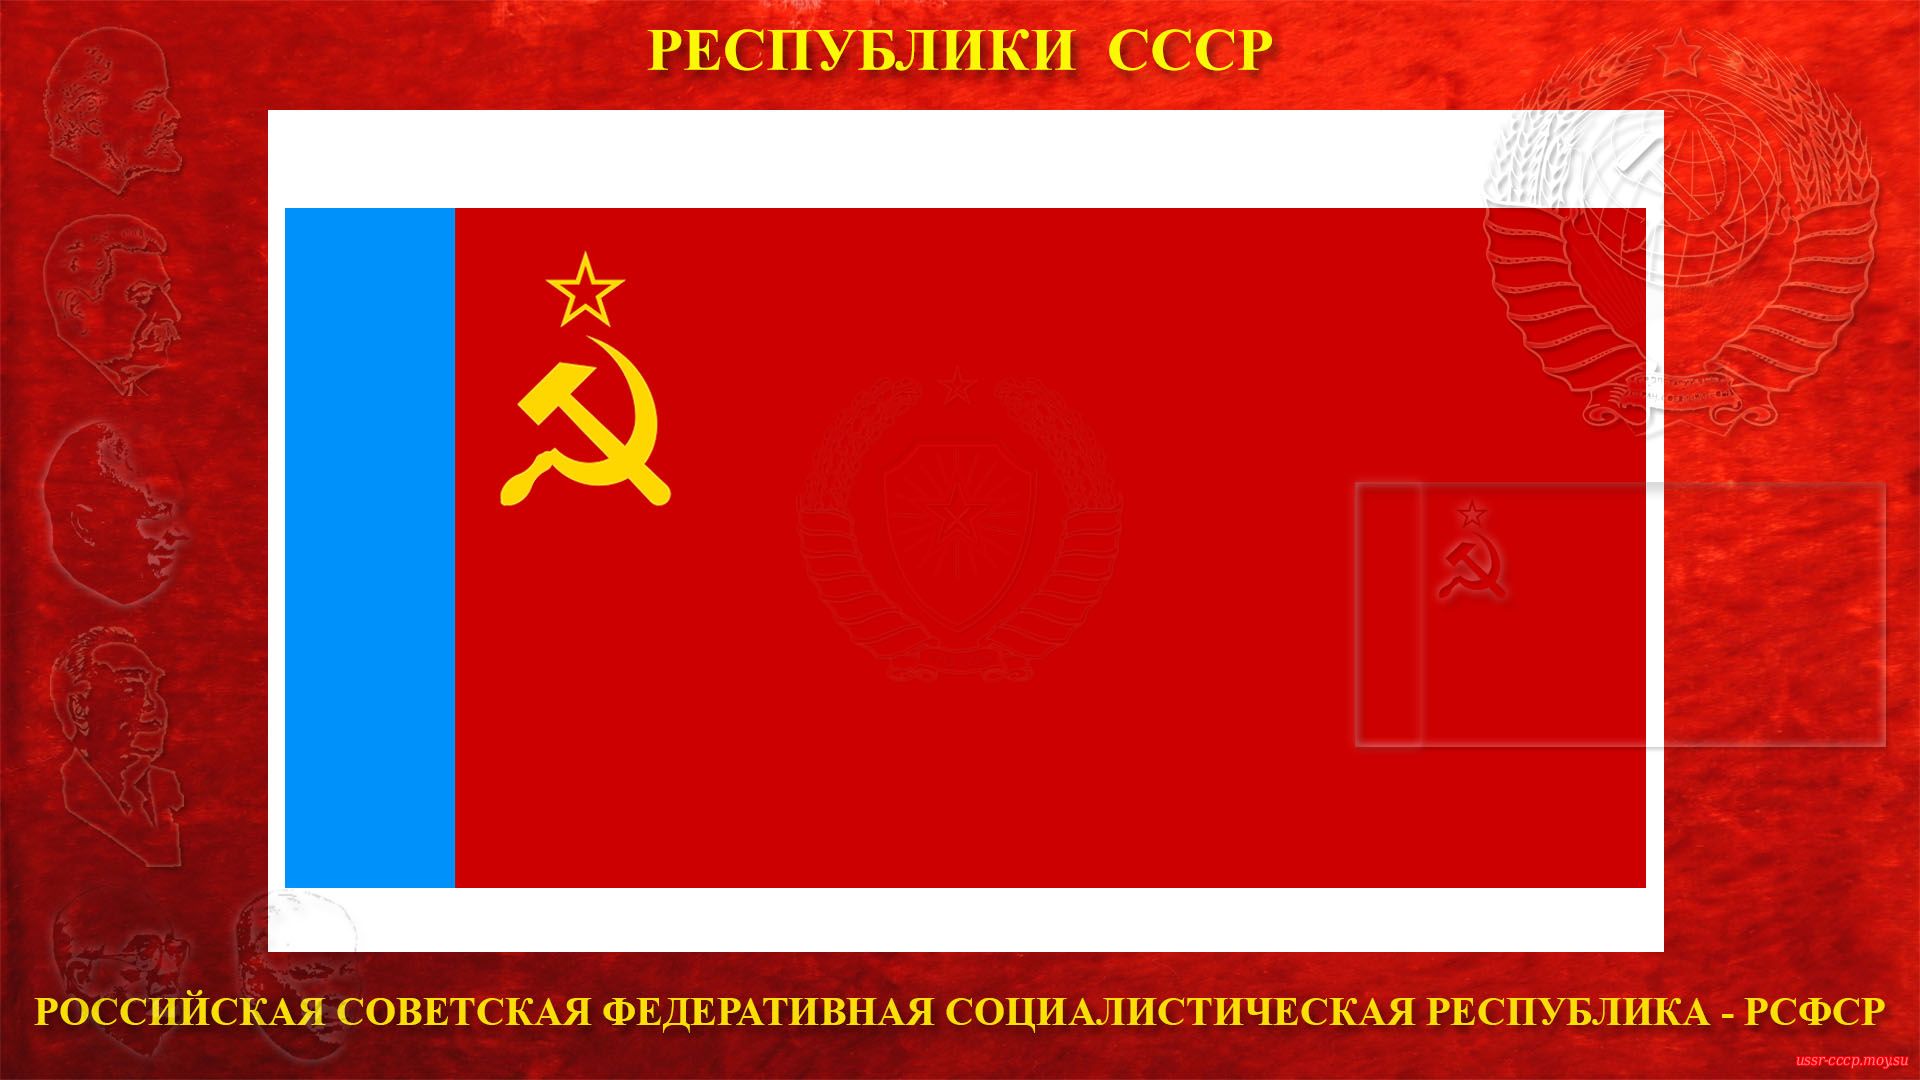 Государственный флаг Российской Советской Федеративной Социалистической Республики (РСФСР) (1954—1991).